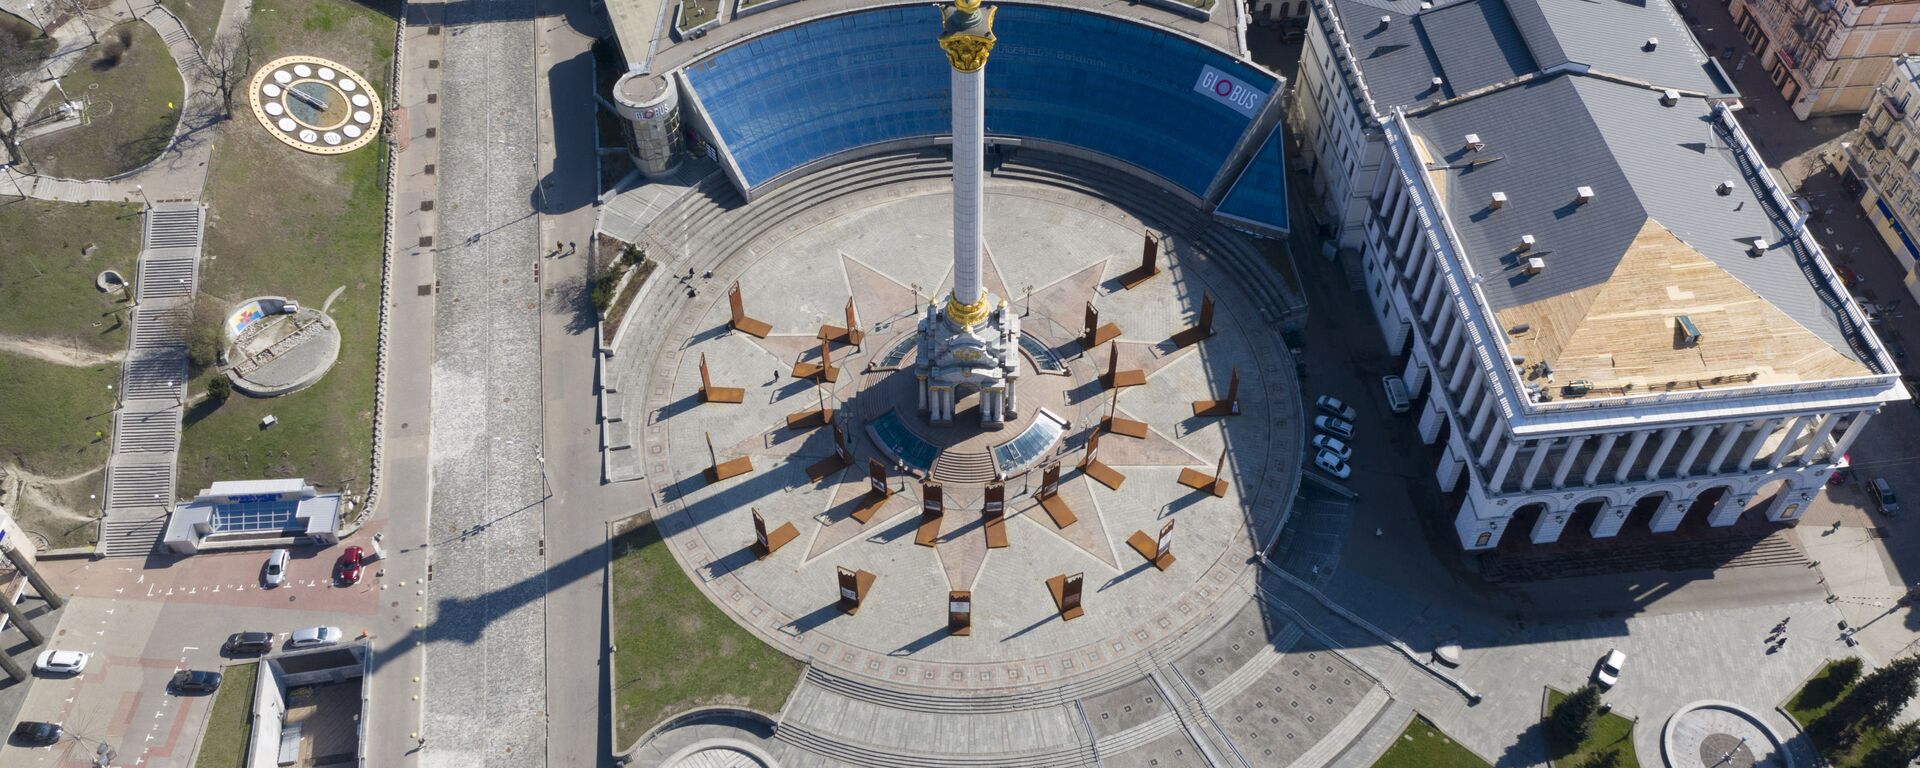 Вид на площадь Независимости в Киеве - Sputnik Узбекистан, 1920, 16.06.2020